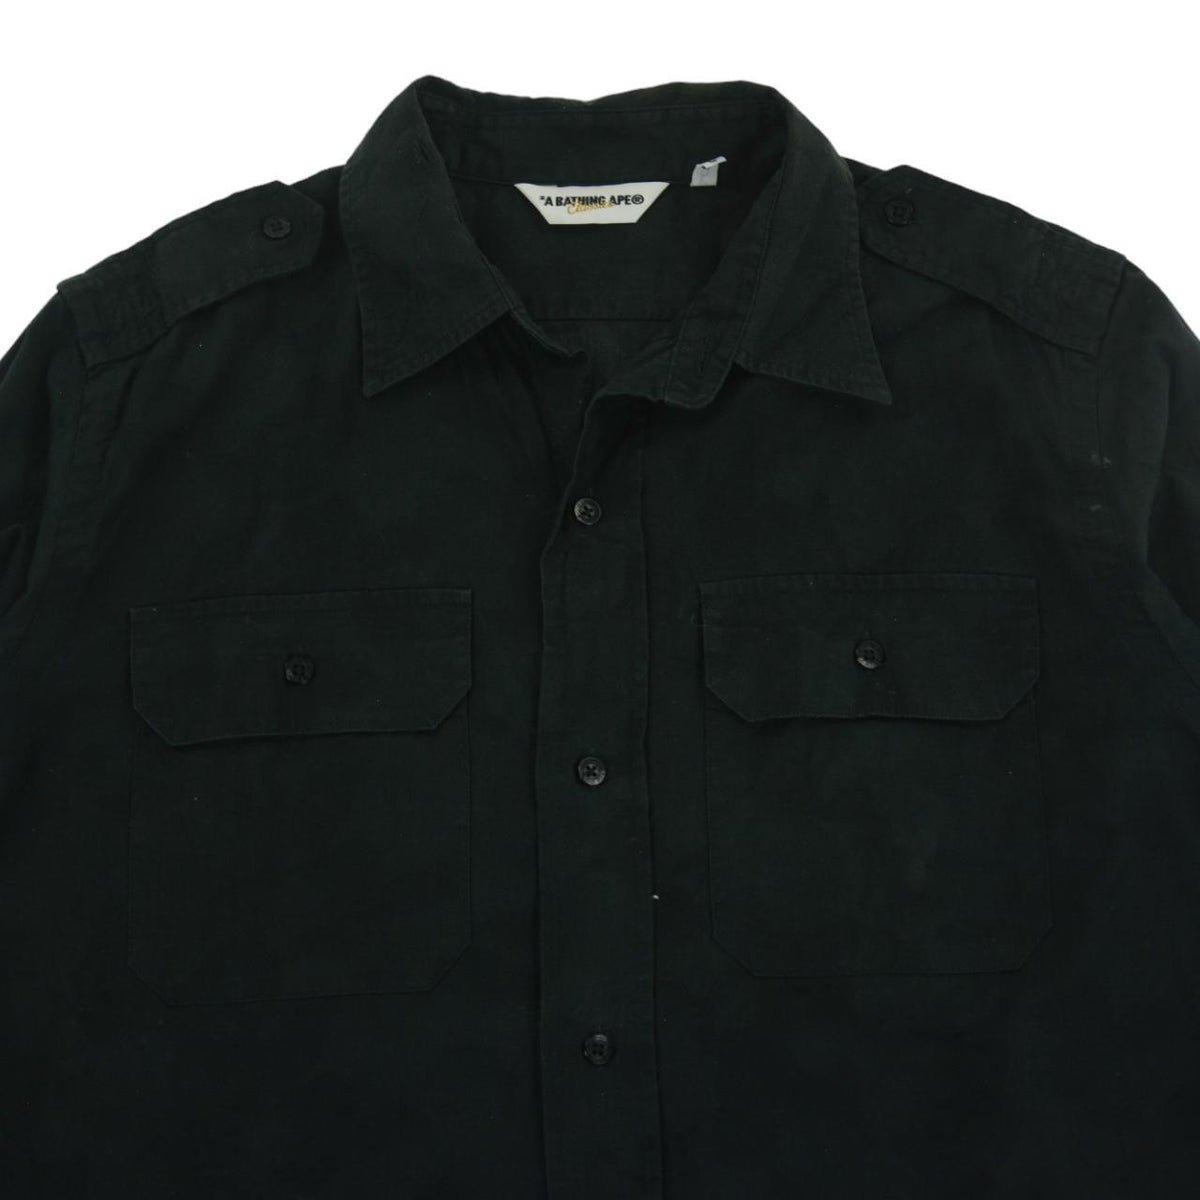 Vintage BAPE Button Up Shirt Size L